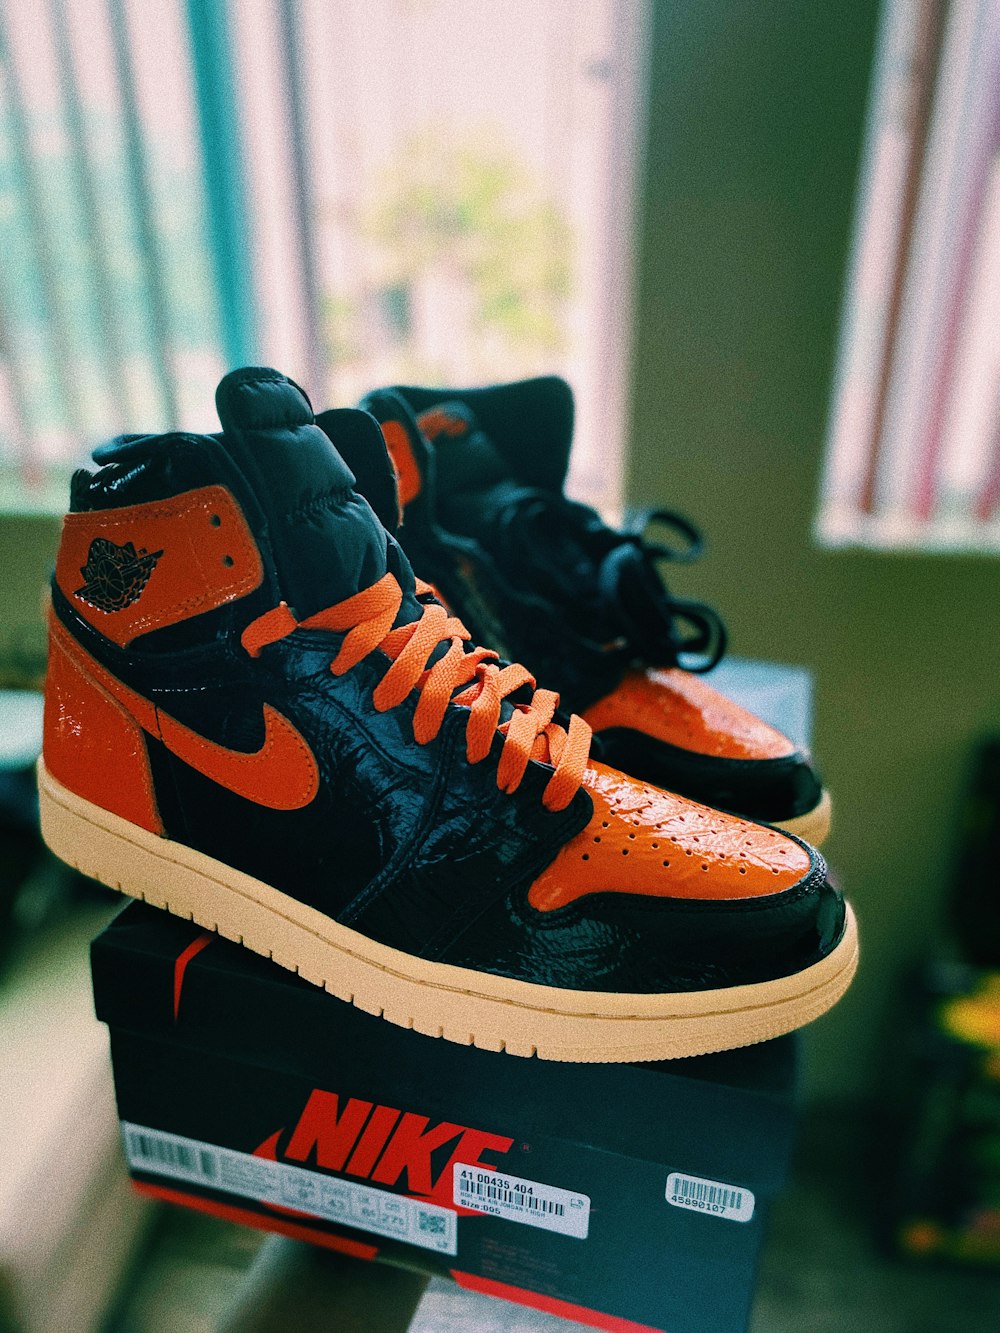 Black and orange nike high top sneakers photo – Free Footwear Image on  Unsplash